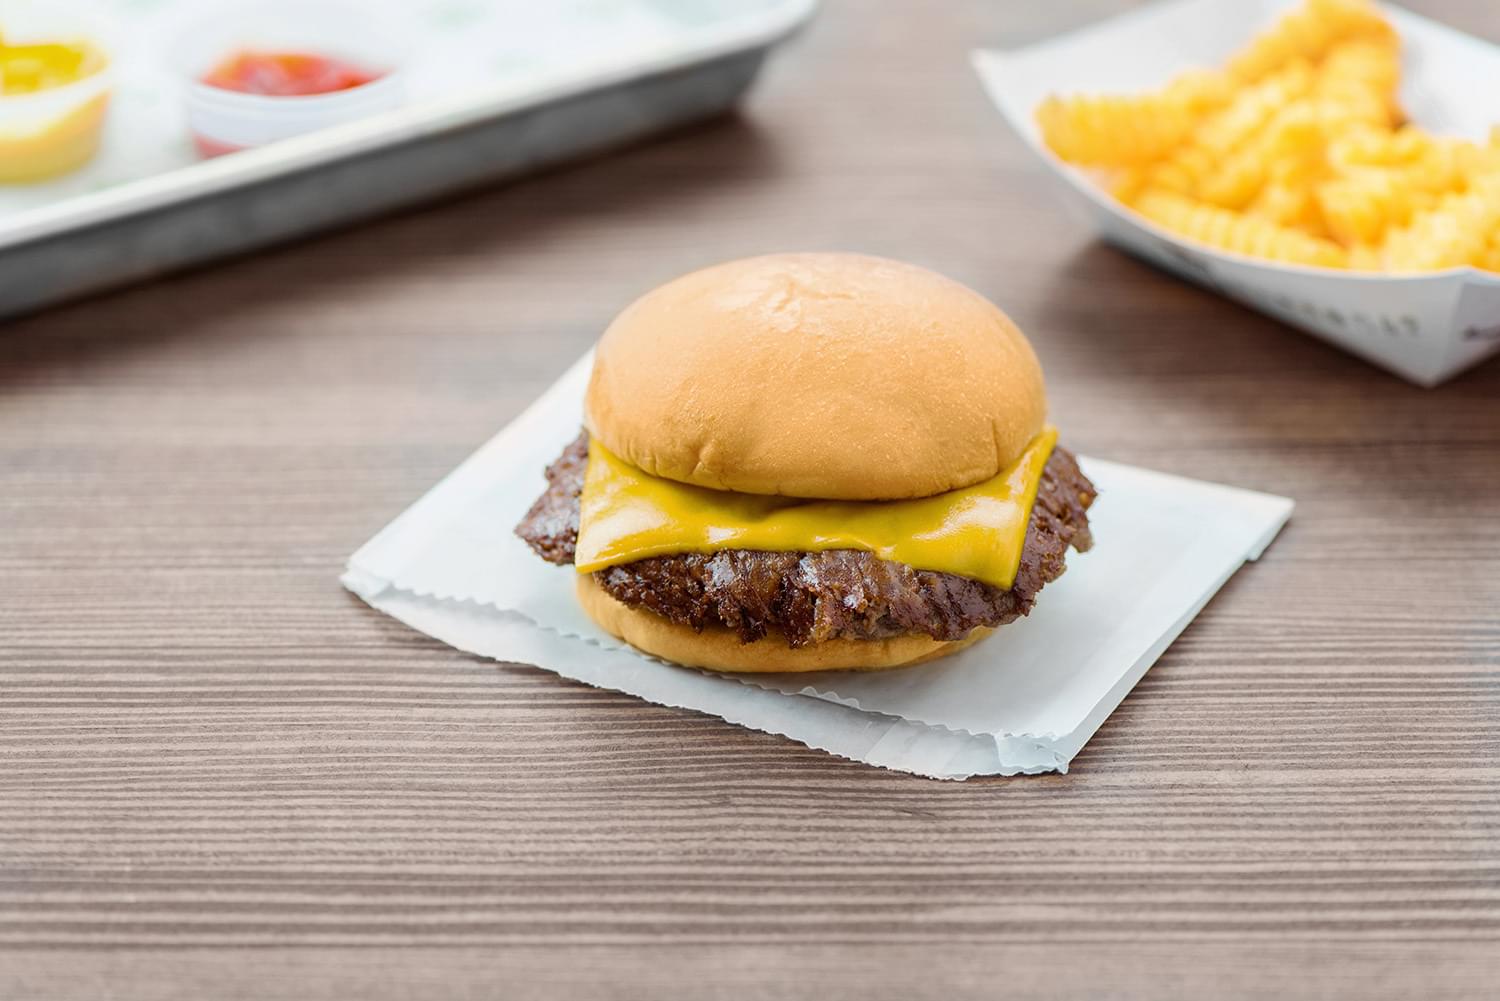 Shake Shack Cheeseburger Nutrition Facts